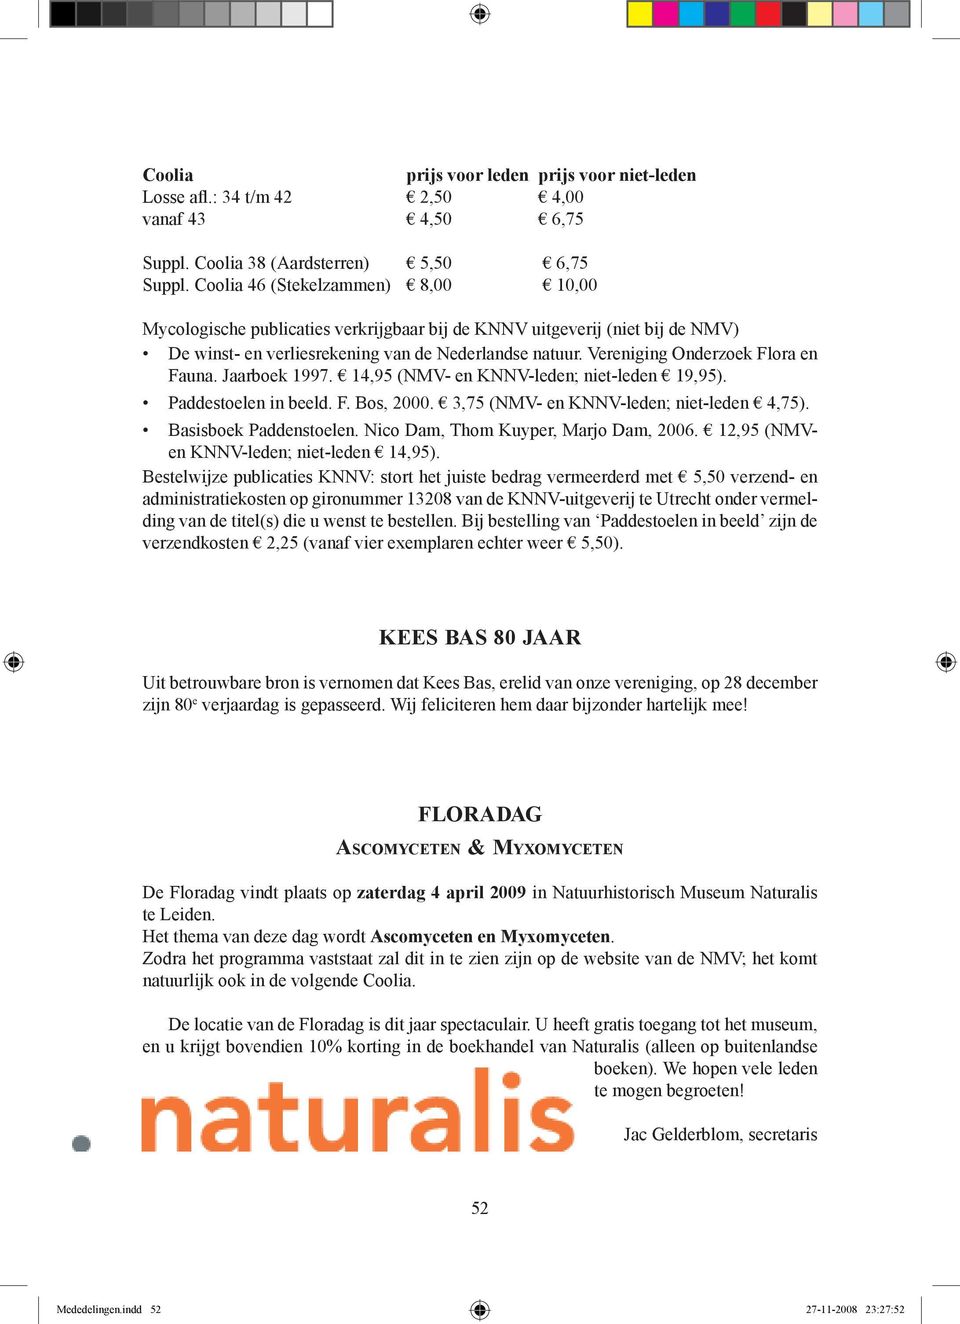 Vereniging Onderzoek Flora en Fauna. Jaarboek 1997. 14,95 (NMV- en KNNV-leden; niet-leden 19,95). Paddestoelen in beeld. F. Bos, 2000. 3,75 (NMV- en KNNV-leden; niet-leden 4,75).